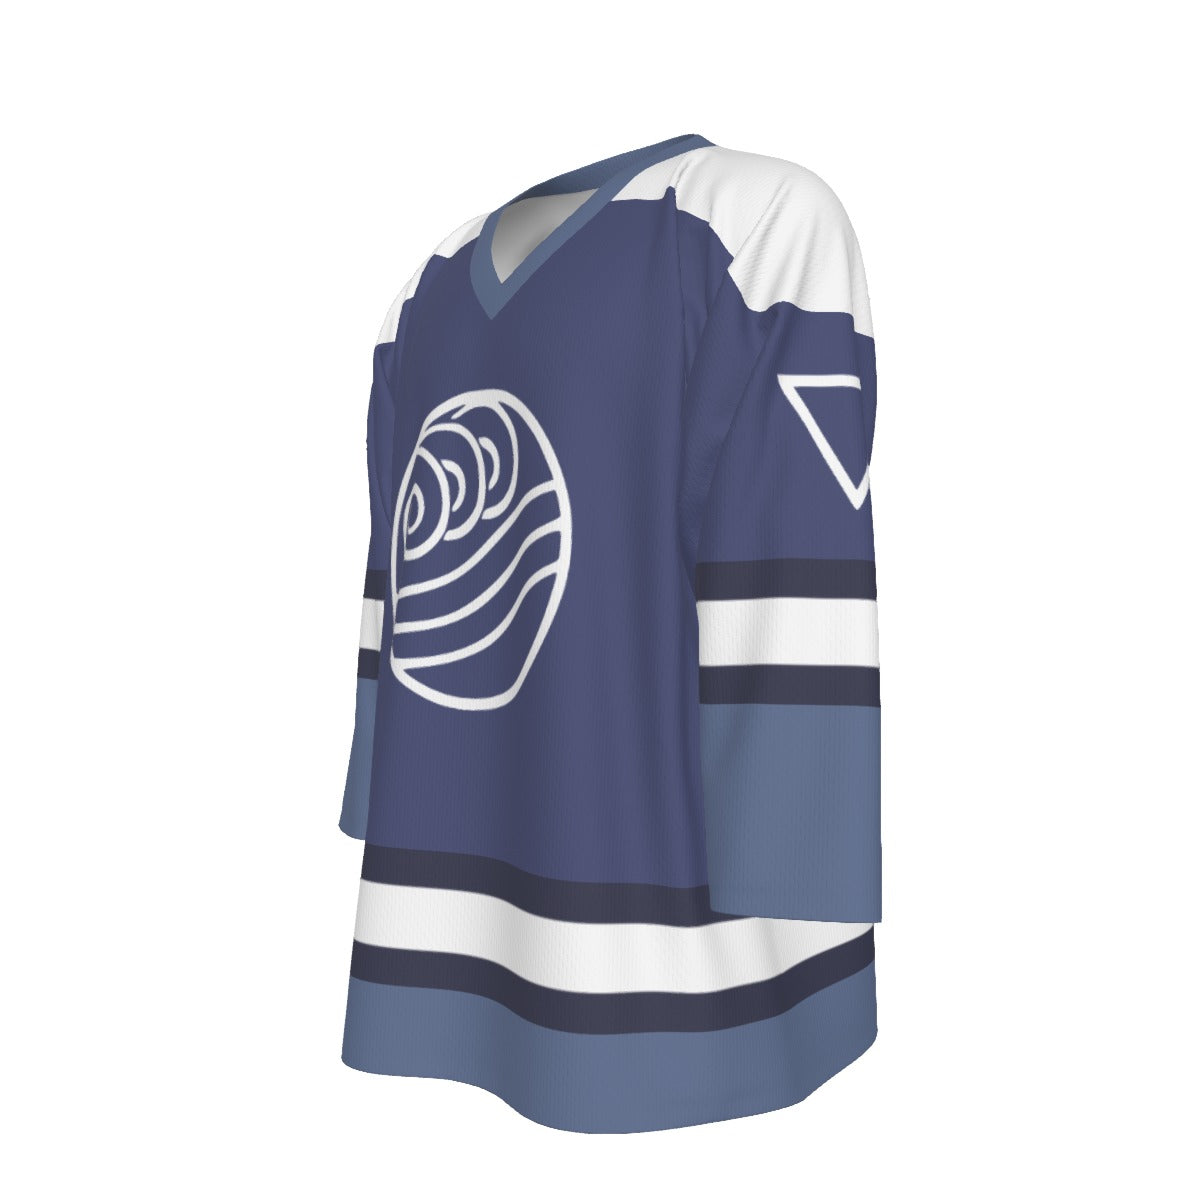 Avatar / Water Tribe Unisex V-neck Hockey Jersey